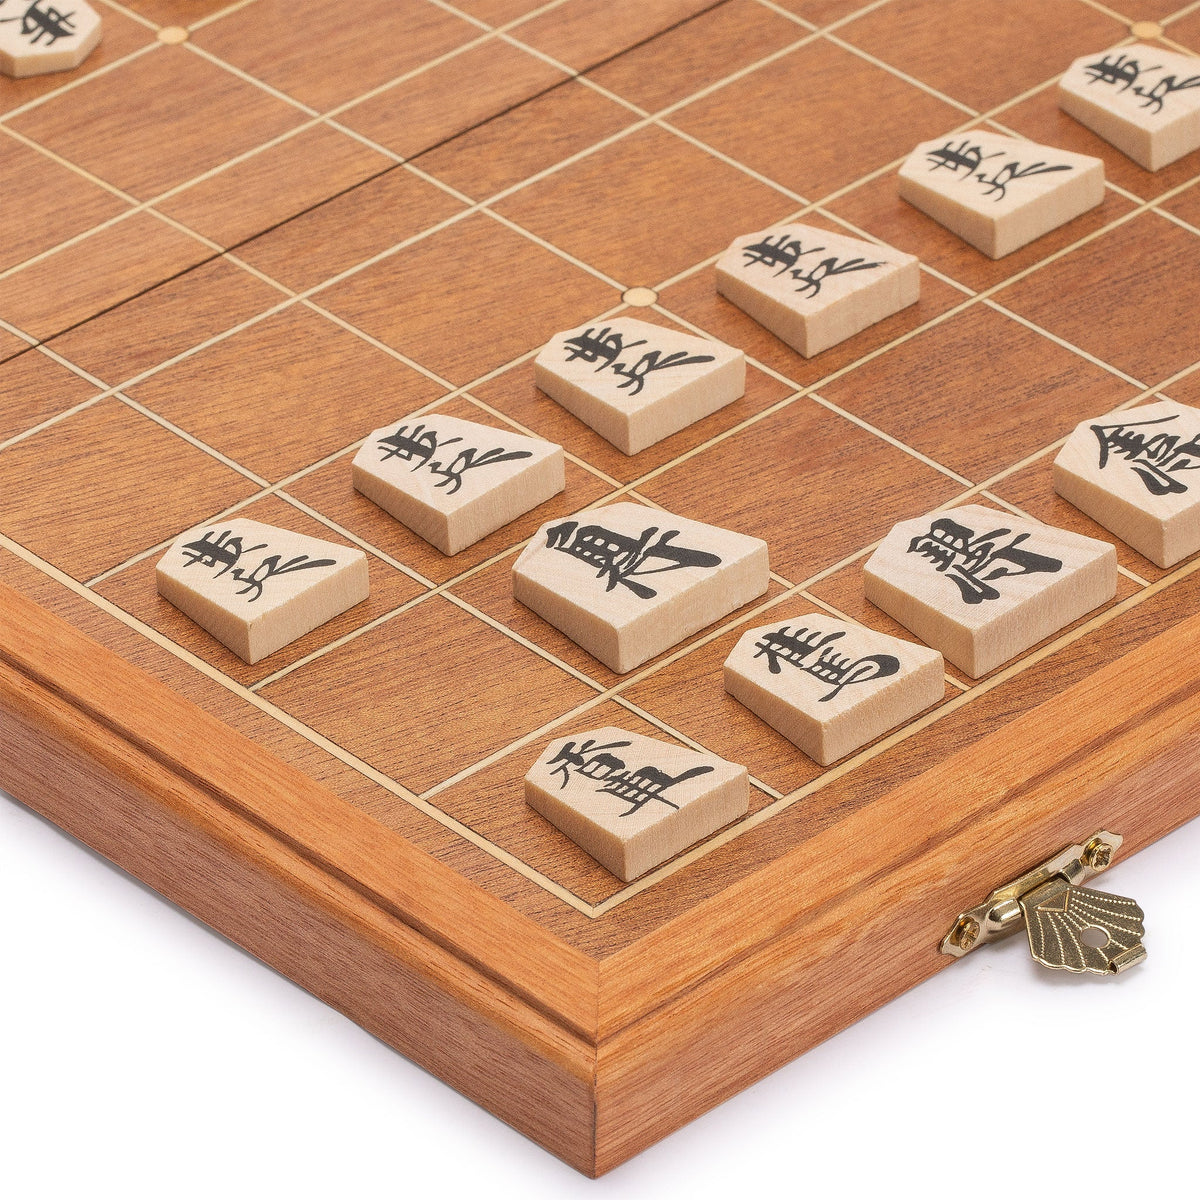 KUMON Shogi set for learning japanese chess for beginner wooden folding  board